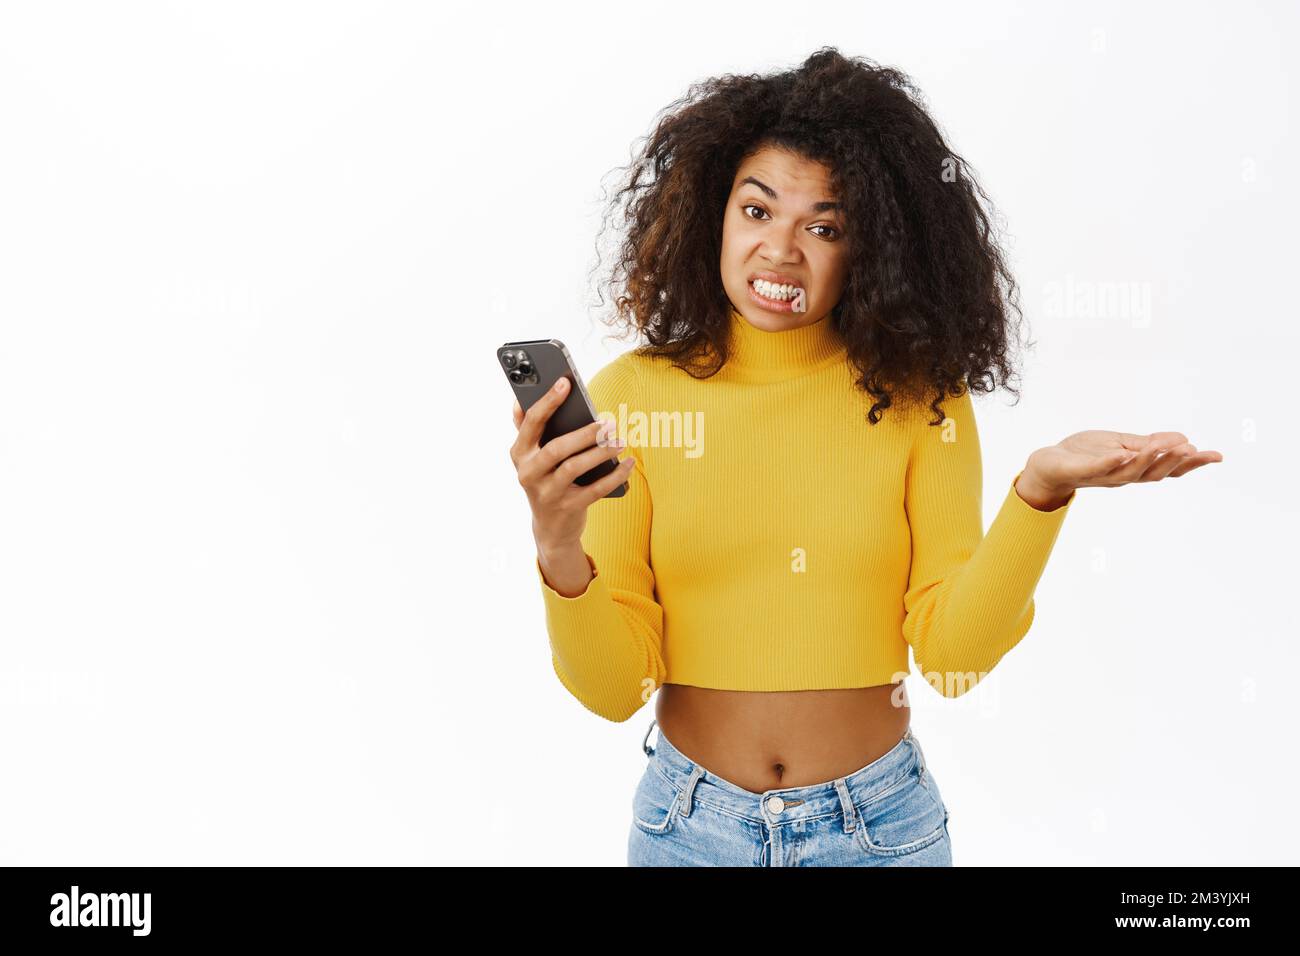 Ragazza afroamericana arrabbiata, in cerca di frustrazione, tenendo smartphone con l'espressione del volto delusa, smth odio, in piedi su sfondo bianco Foto Stock